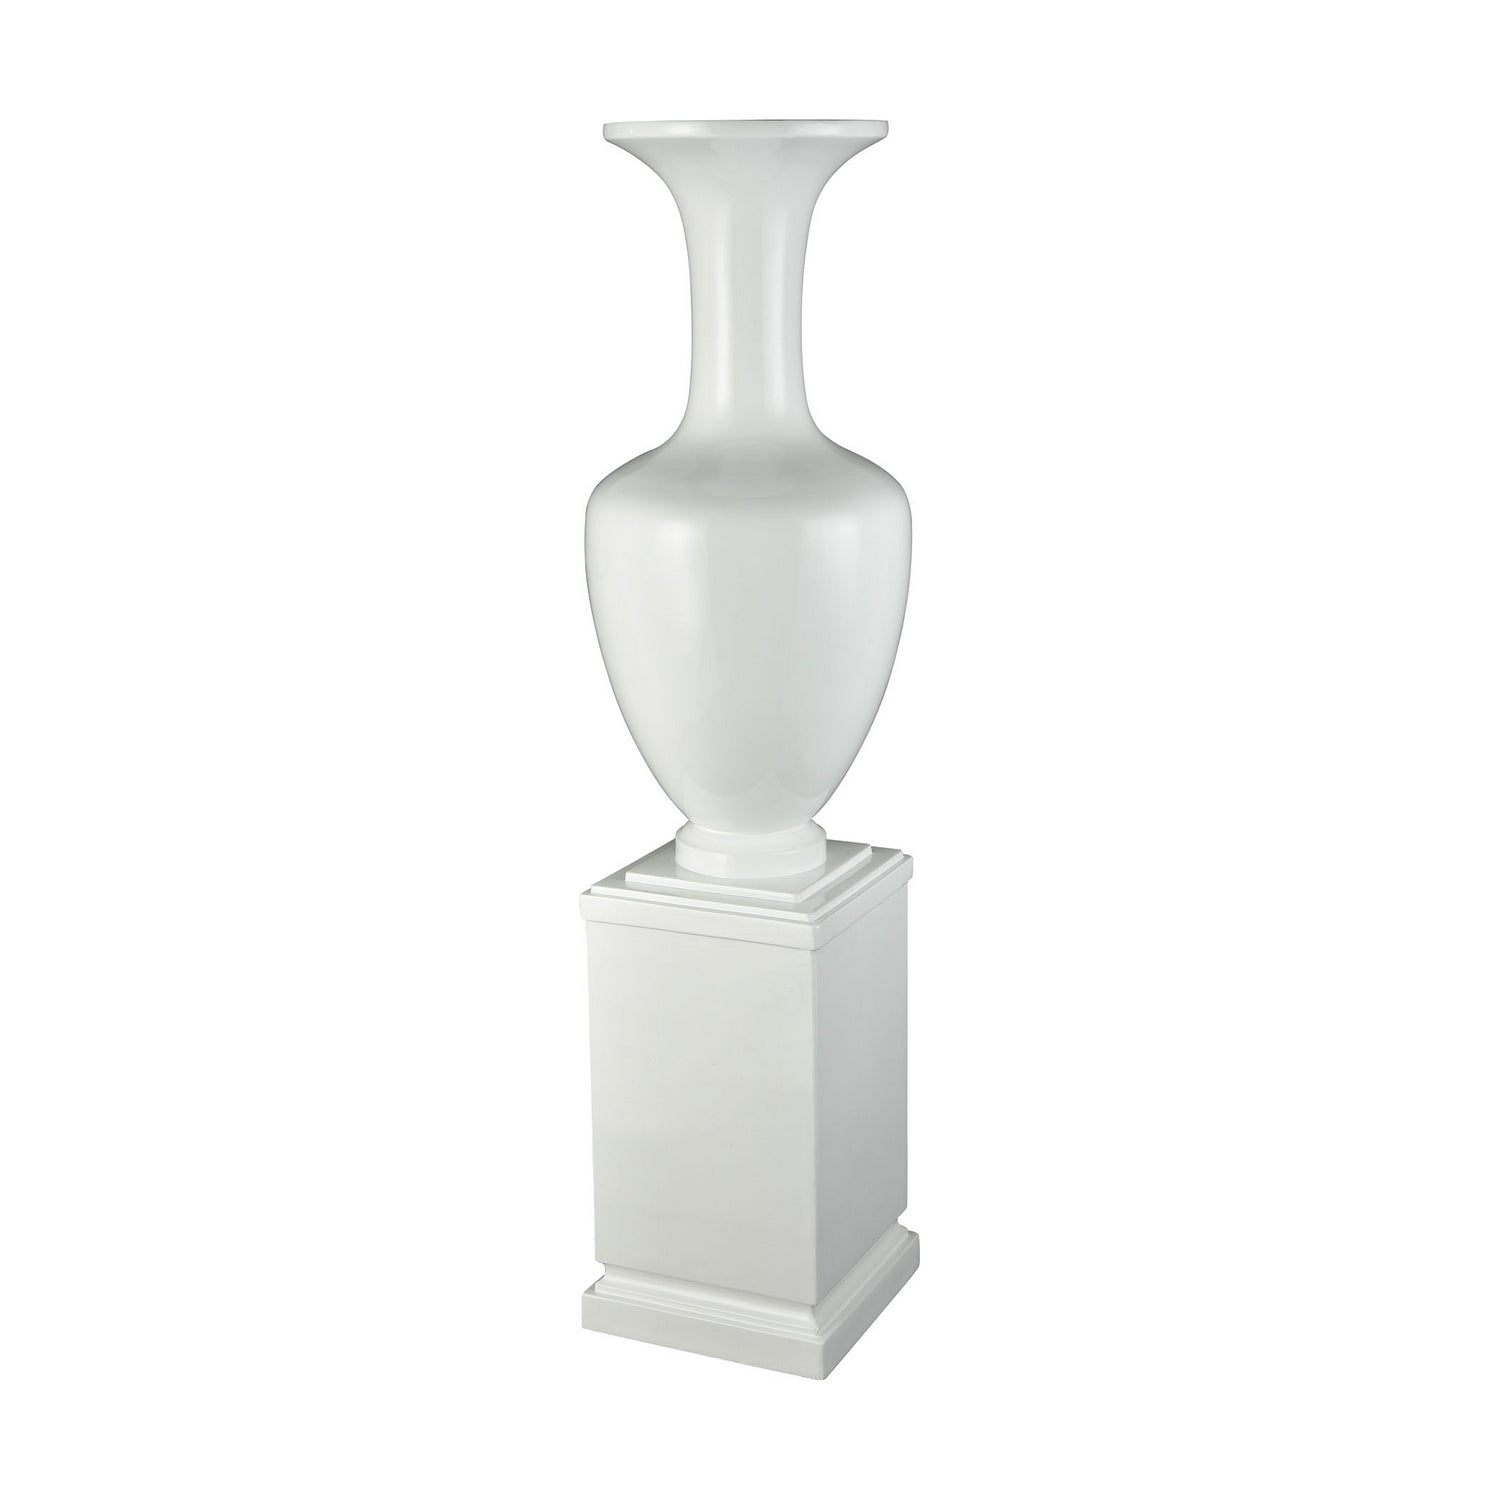 ELK Home - 9166-071 - Vase - Trieste - Gloss White